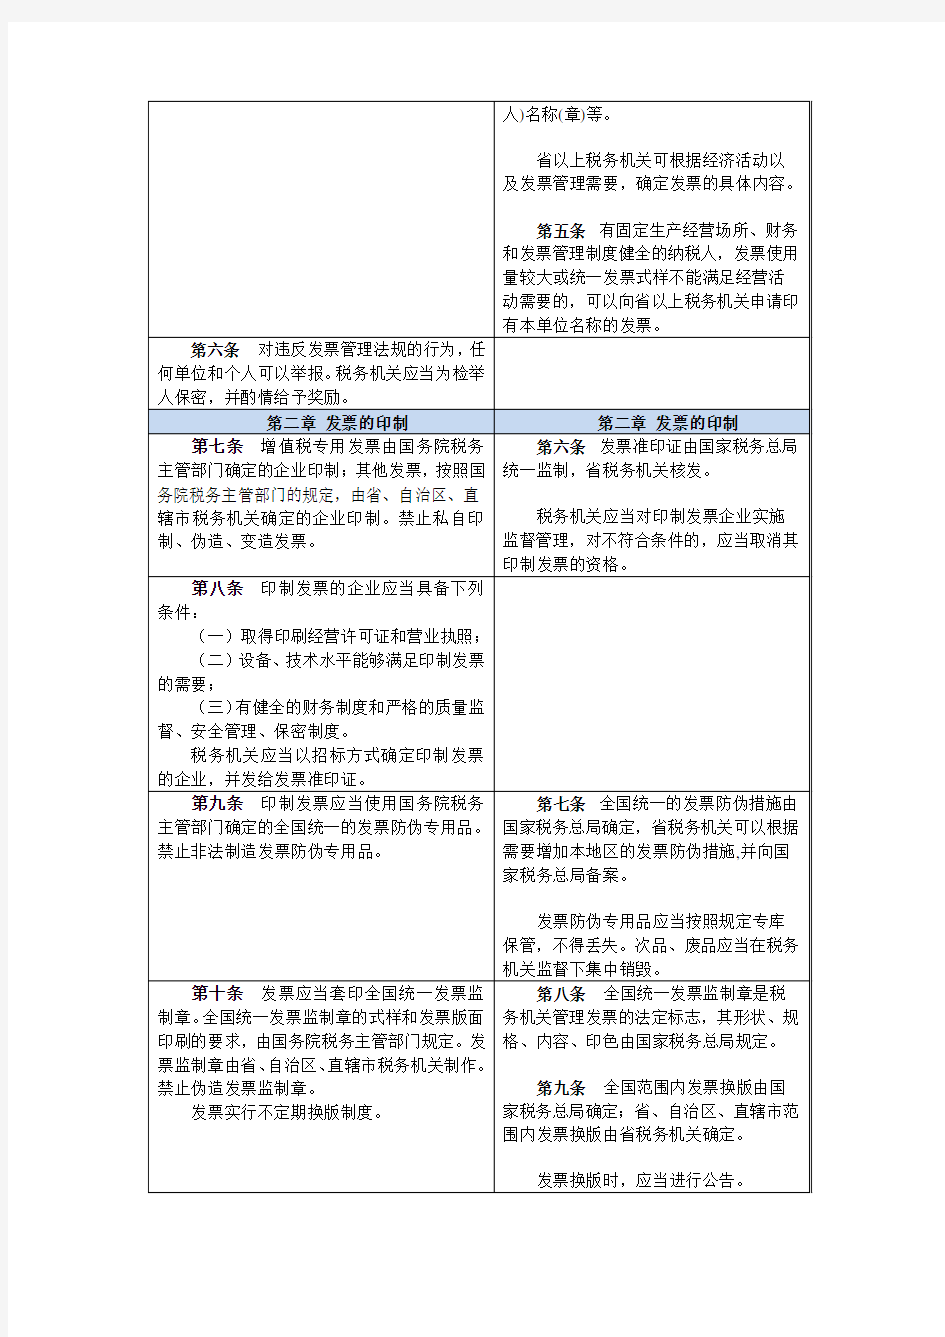 《中华人民共和国发票管理办法》与《实施细则》对照表